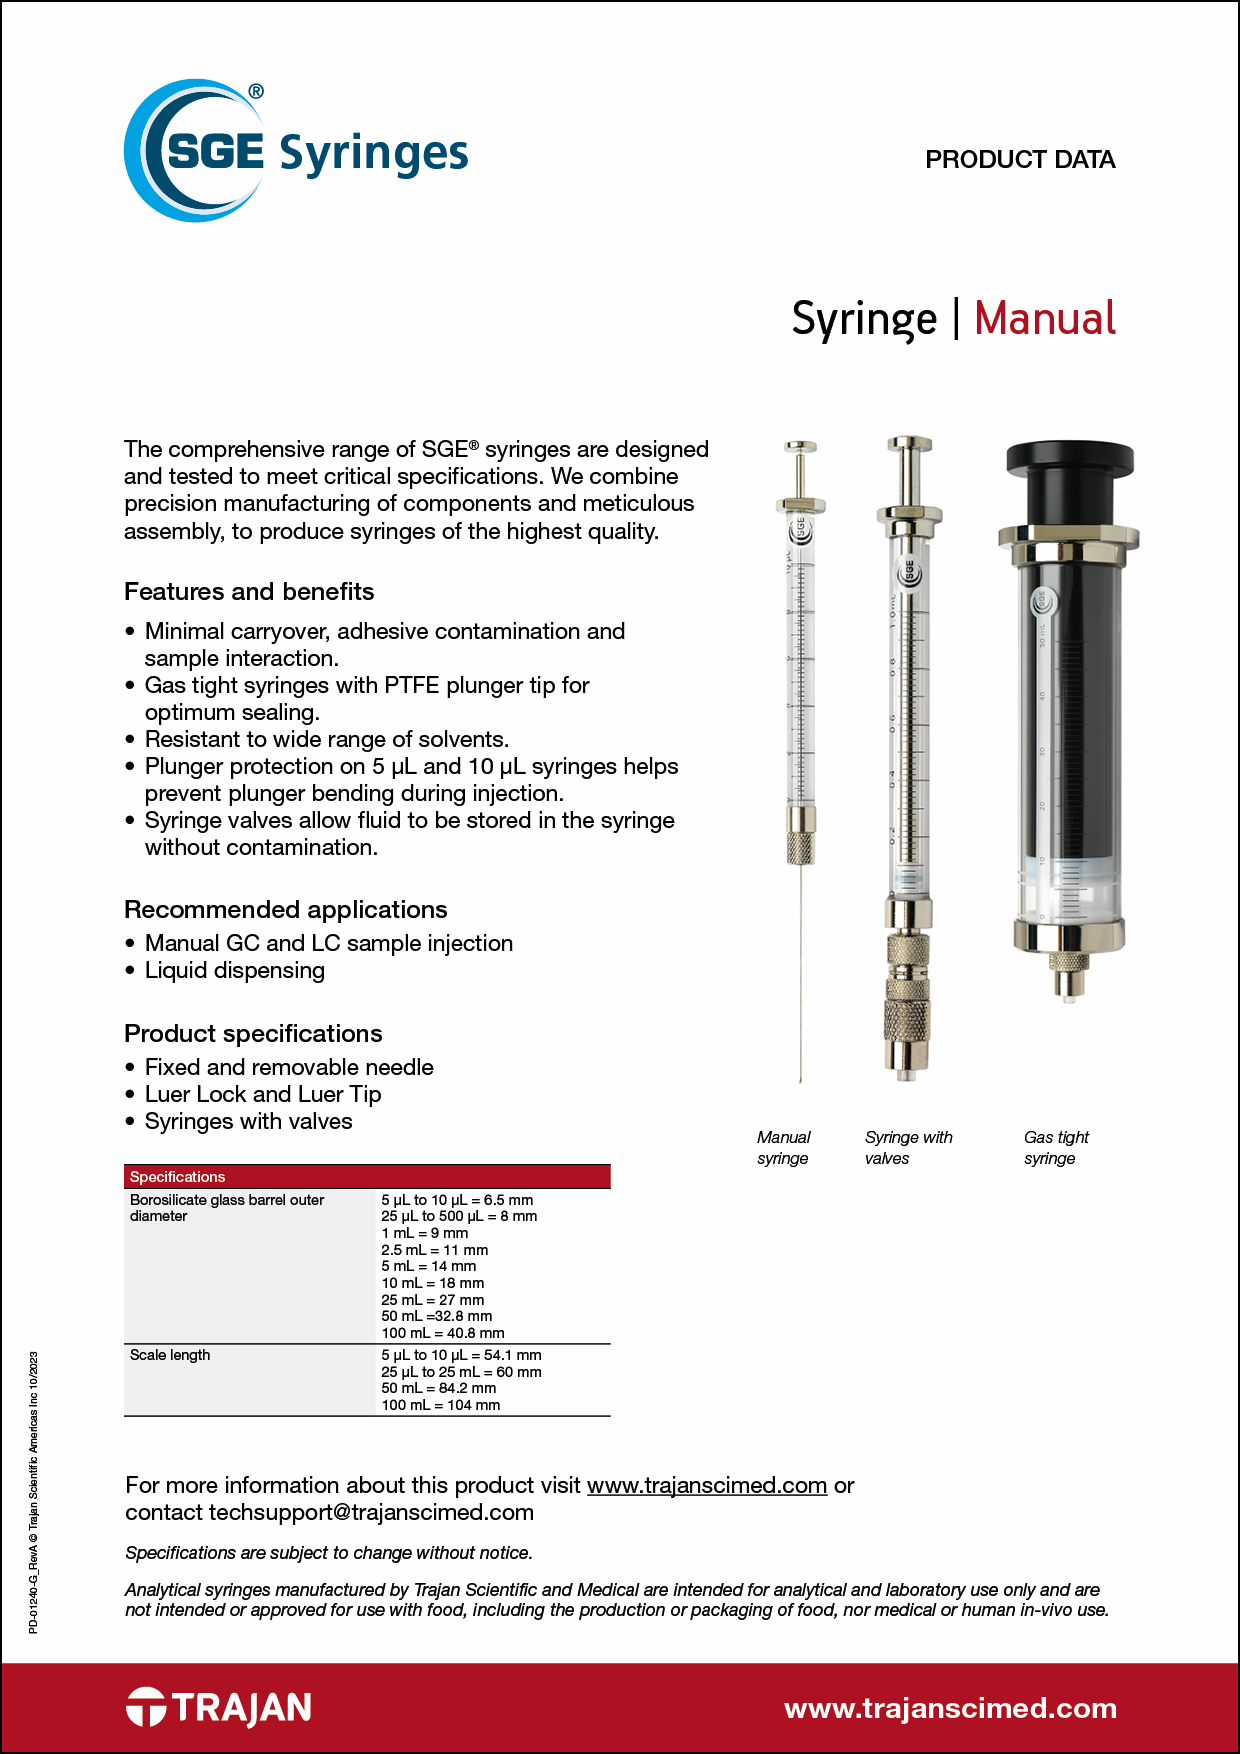 Product Data Sheet - SGE manual syringes